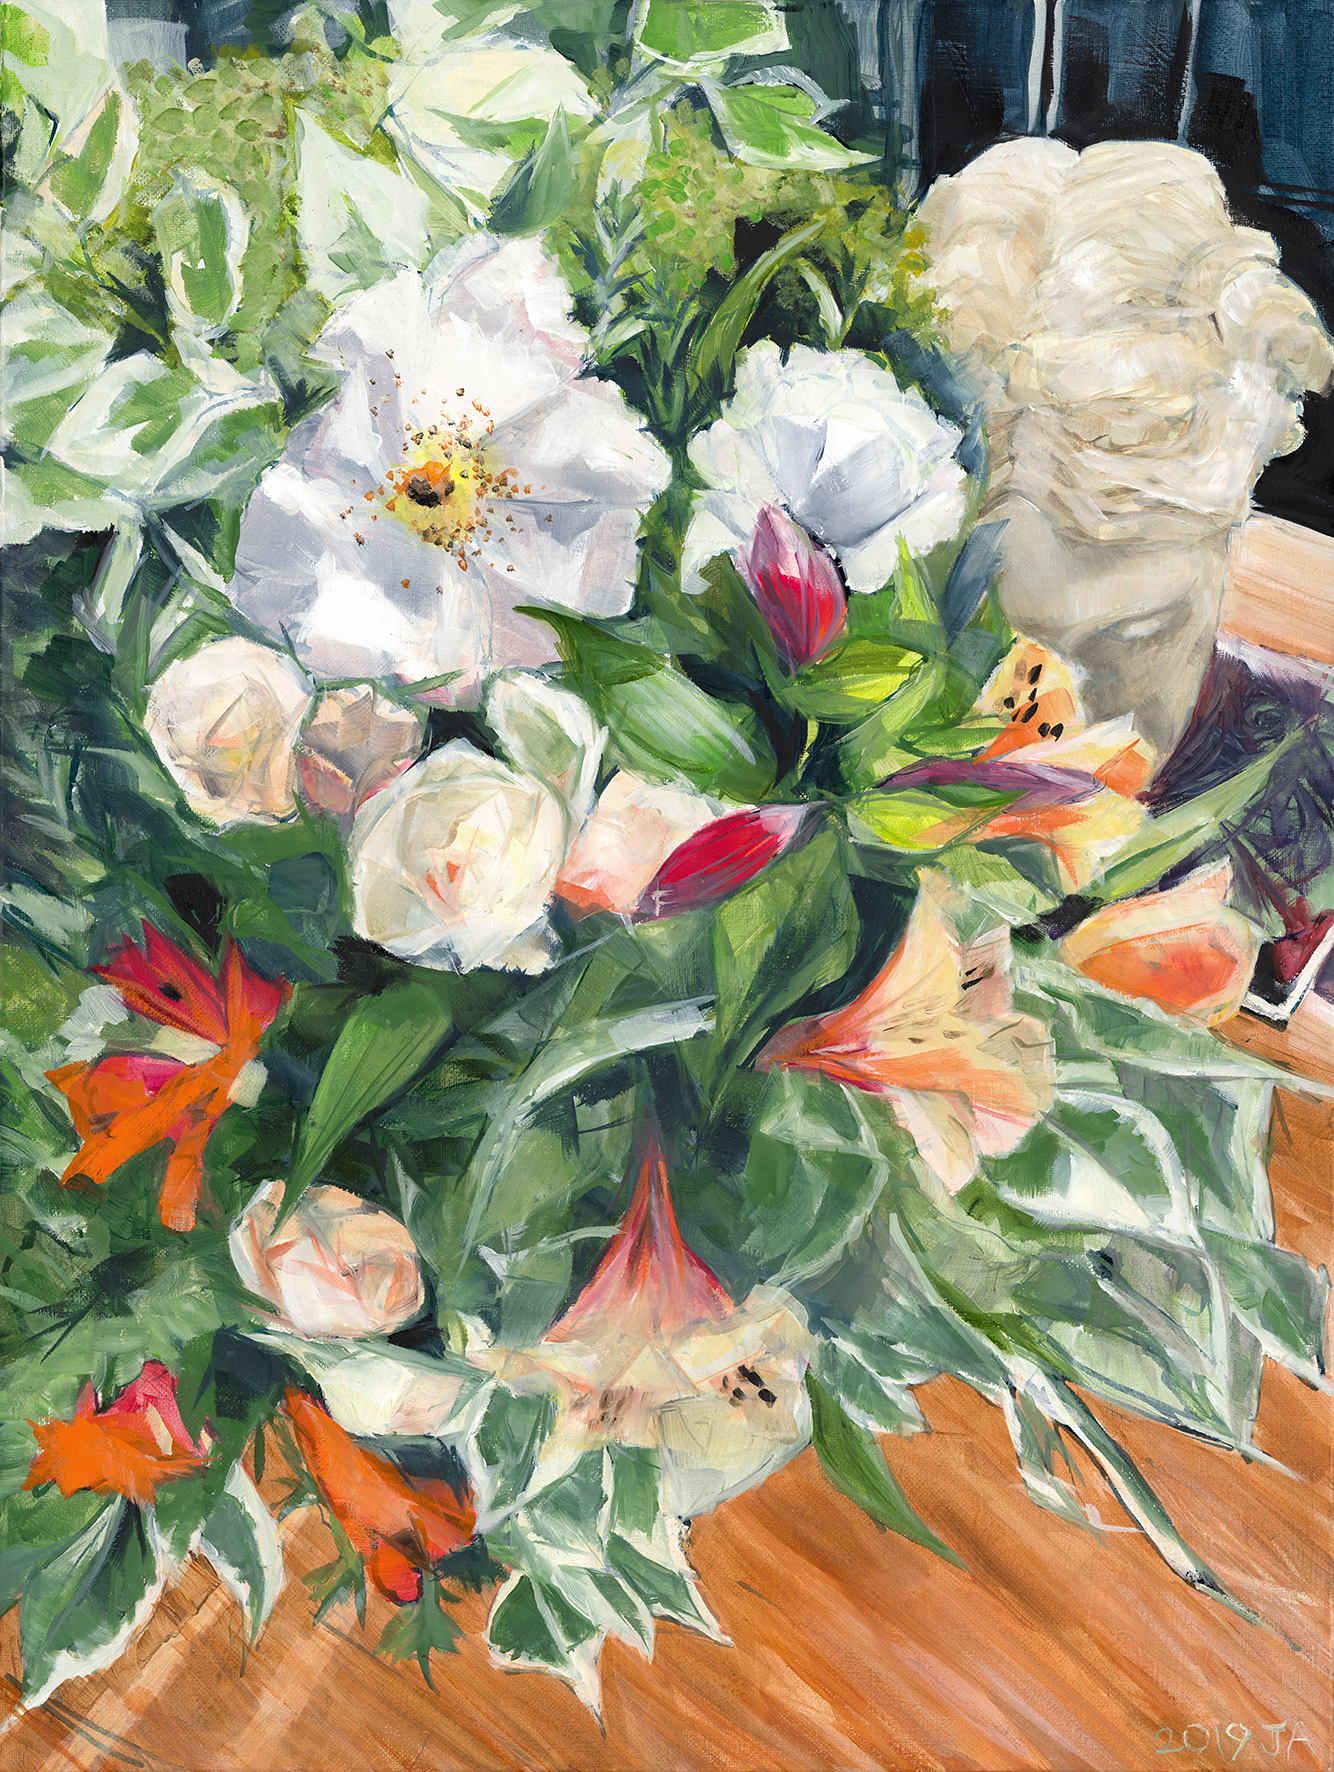 Winter Bouquet as an A3 Giclee print